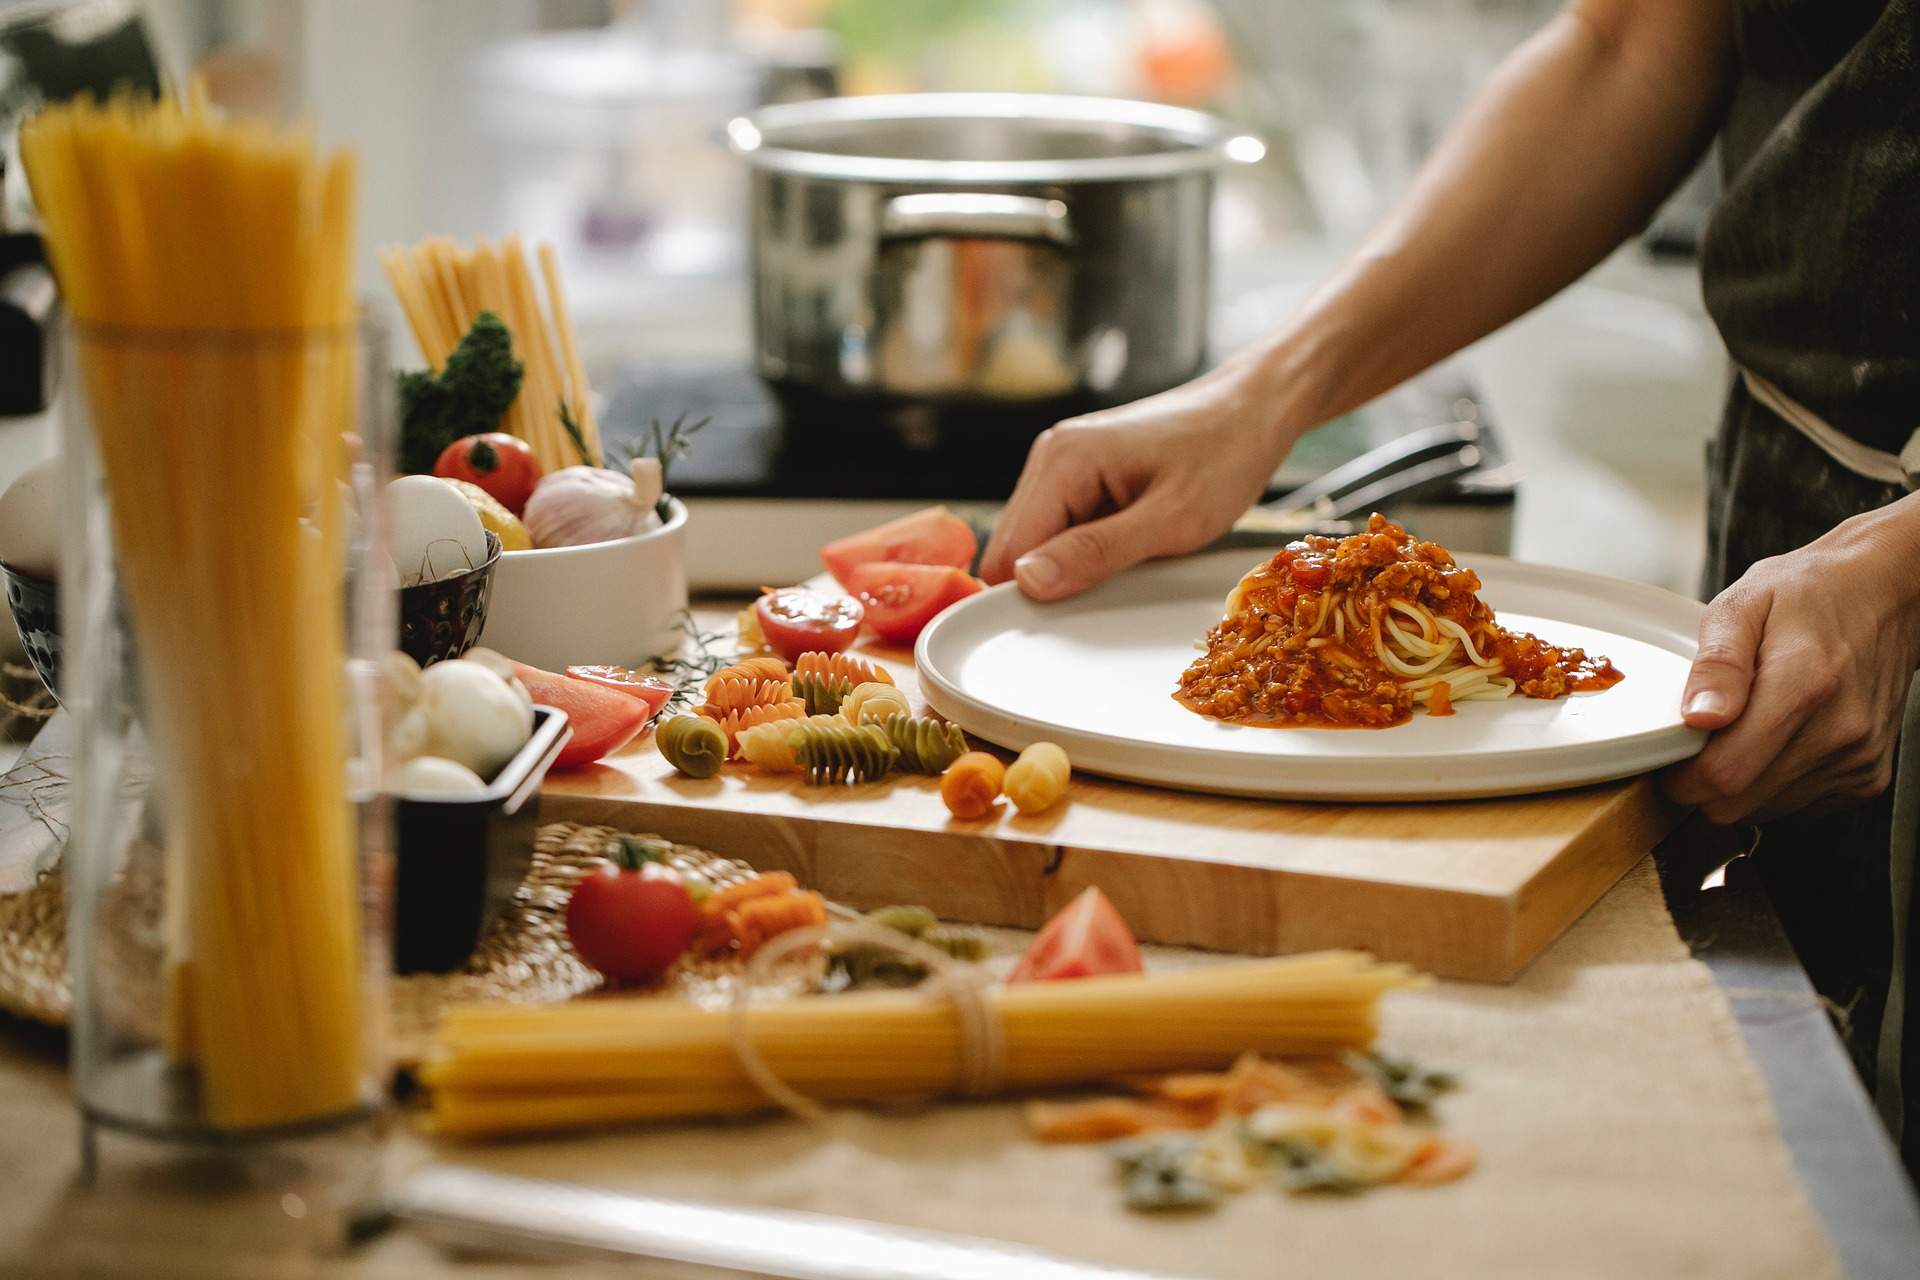 Els joves no saben cuinar: un estudi explica els mals hàbits alimentaris dels universitaris